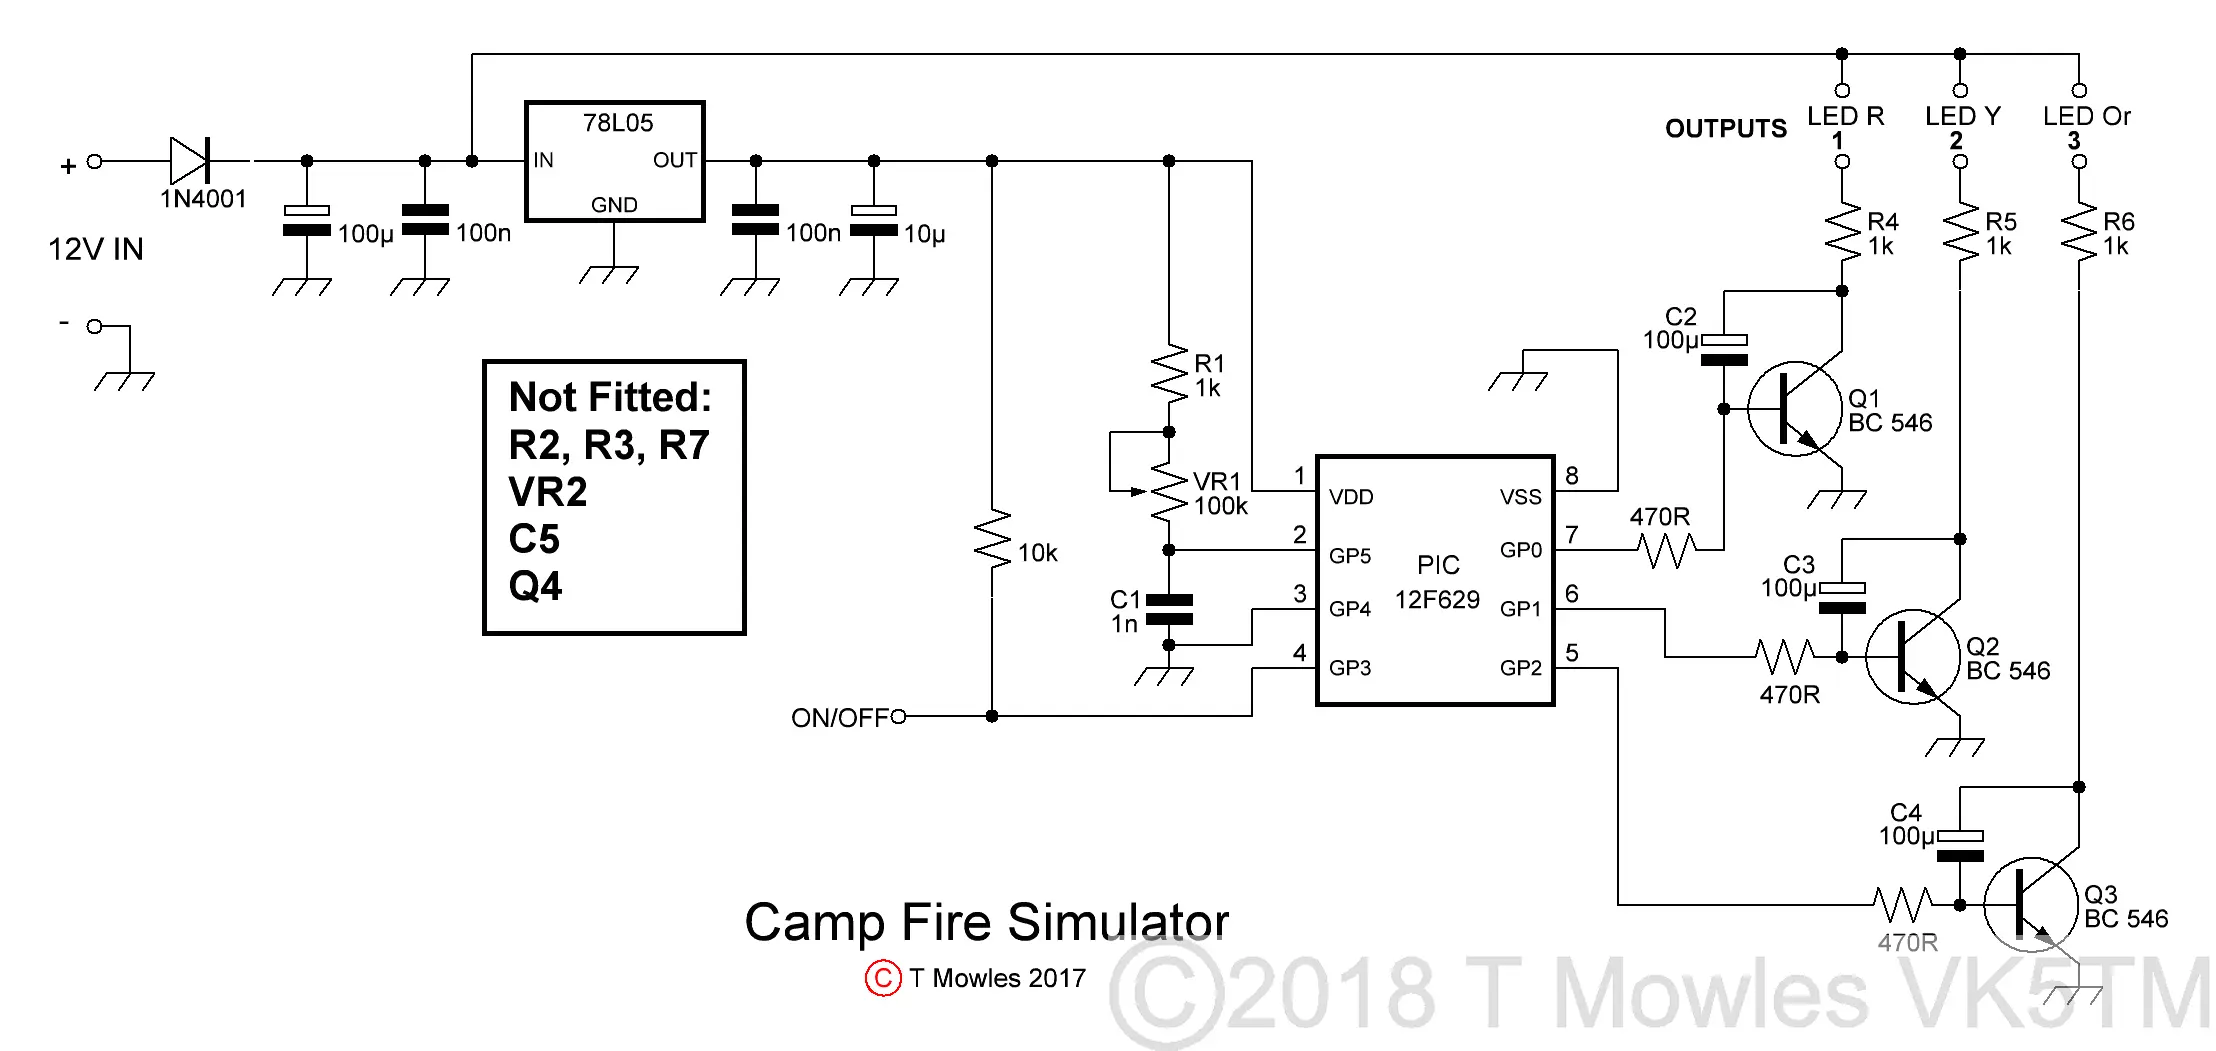 Campfire simulator schematic